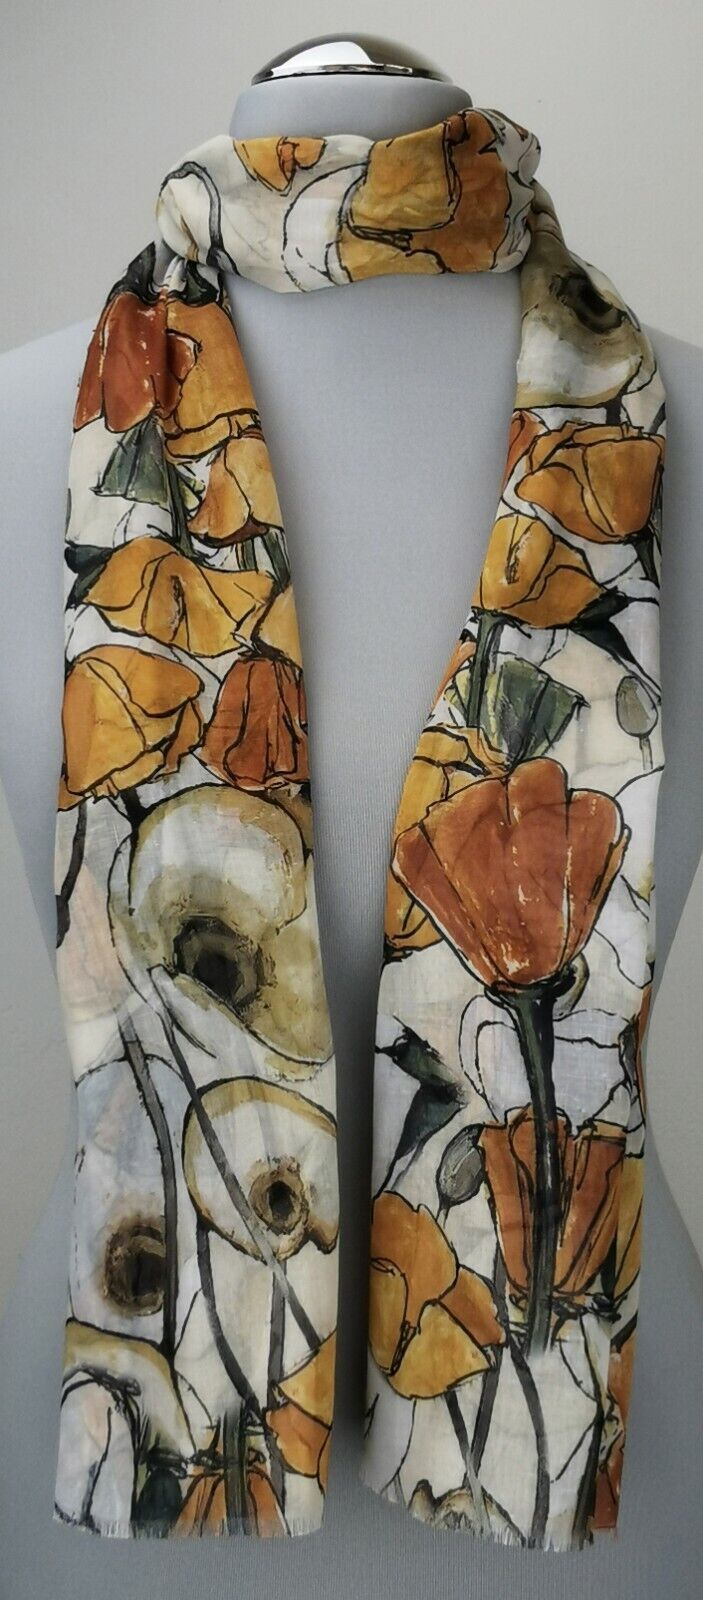  - Leichter Damen-Schal, neu, 170 x 50 cm, beige, mit Blumenmuster, # 2232  